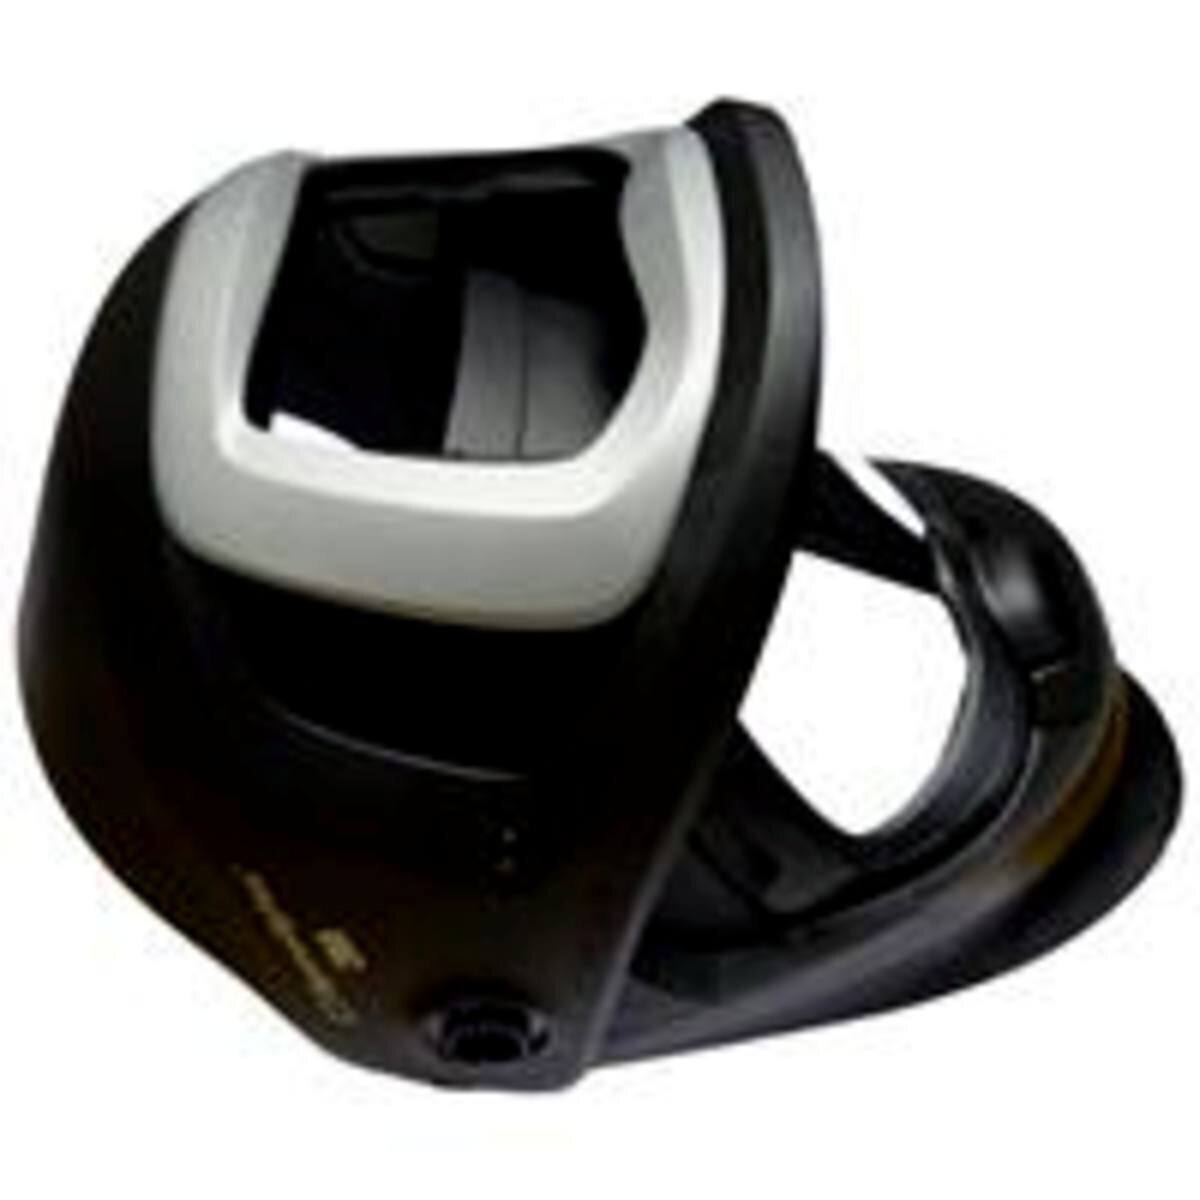 Masque de soudure 3M Speedglas 9100 FX Air sans filtre de soudage automatique ADF, avec fenêtre latérale, sans serre-tête #541890